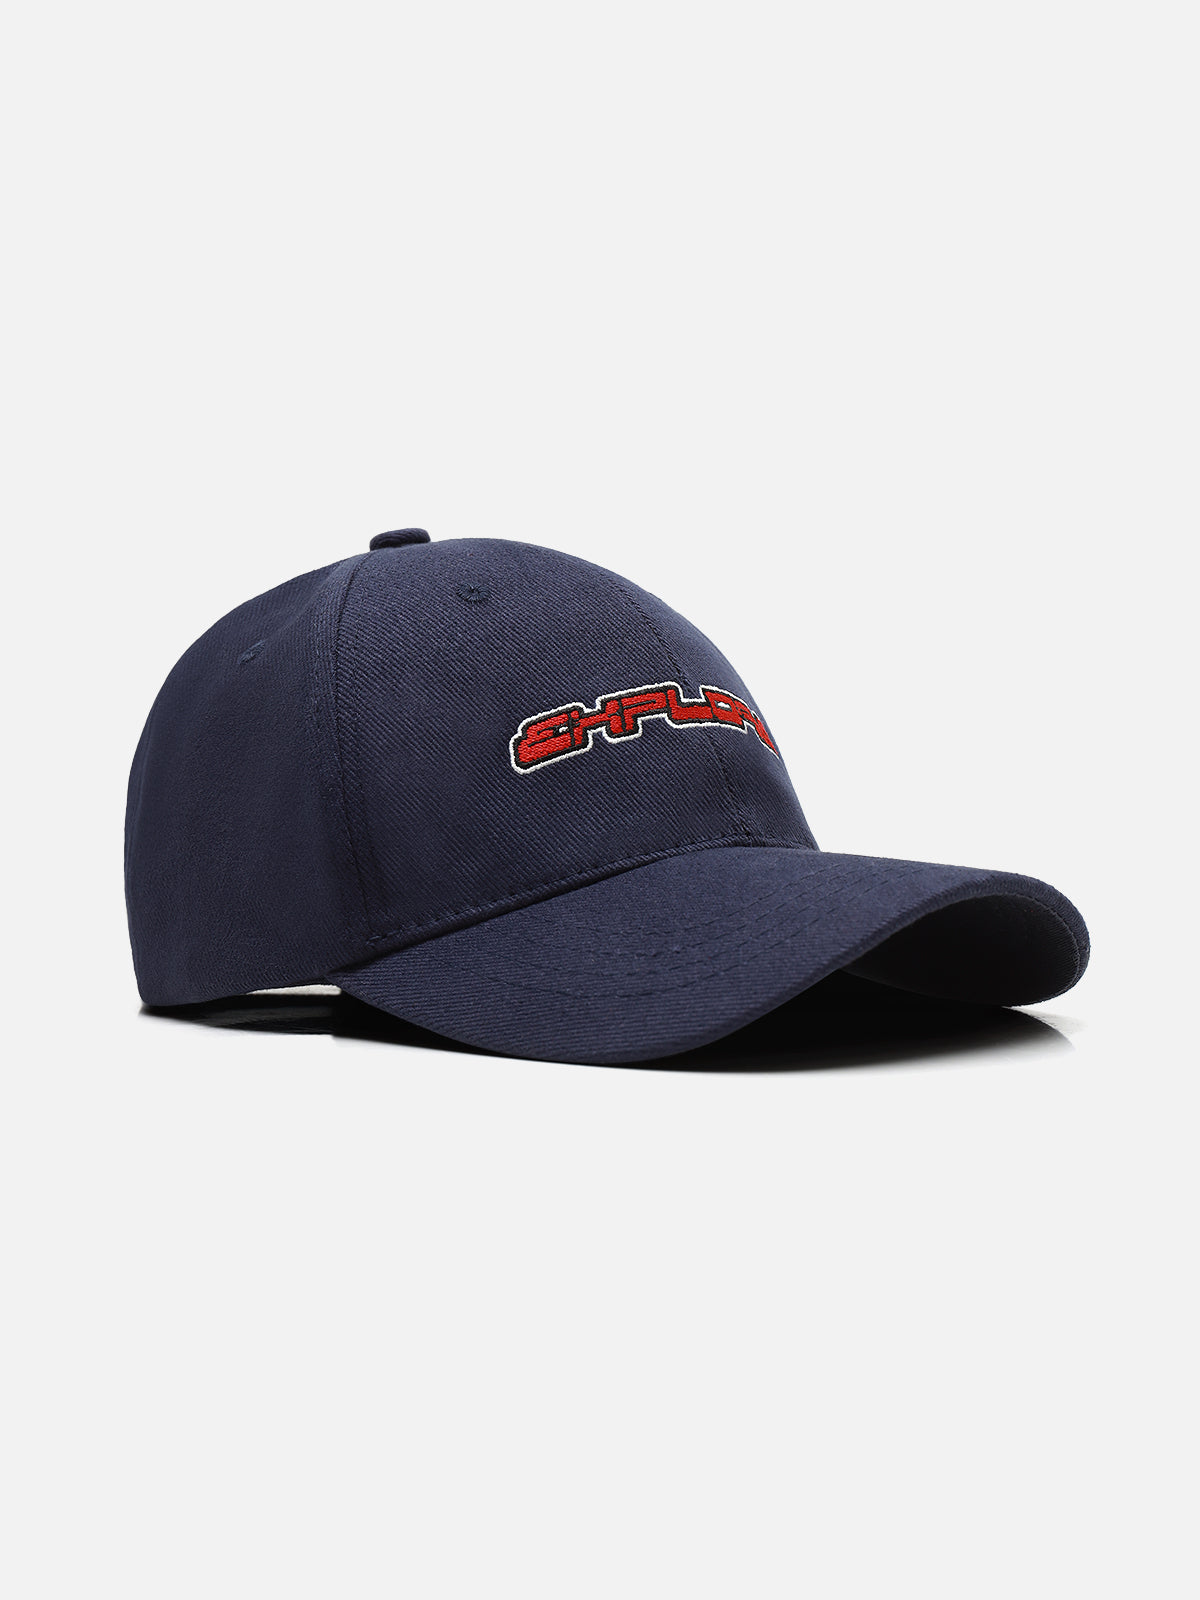 Baseball Cap - FAC24-009